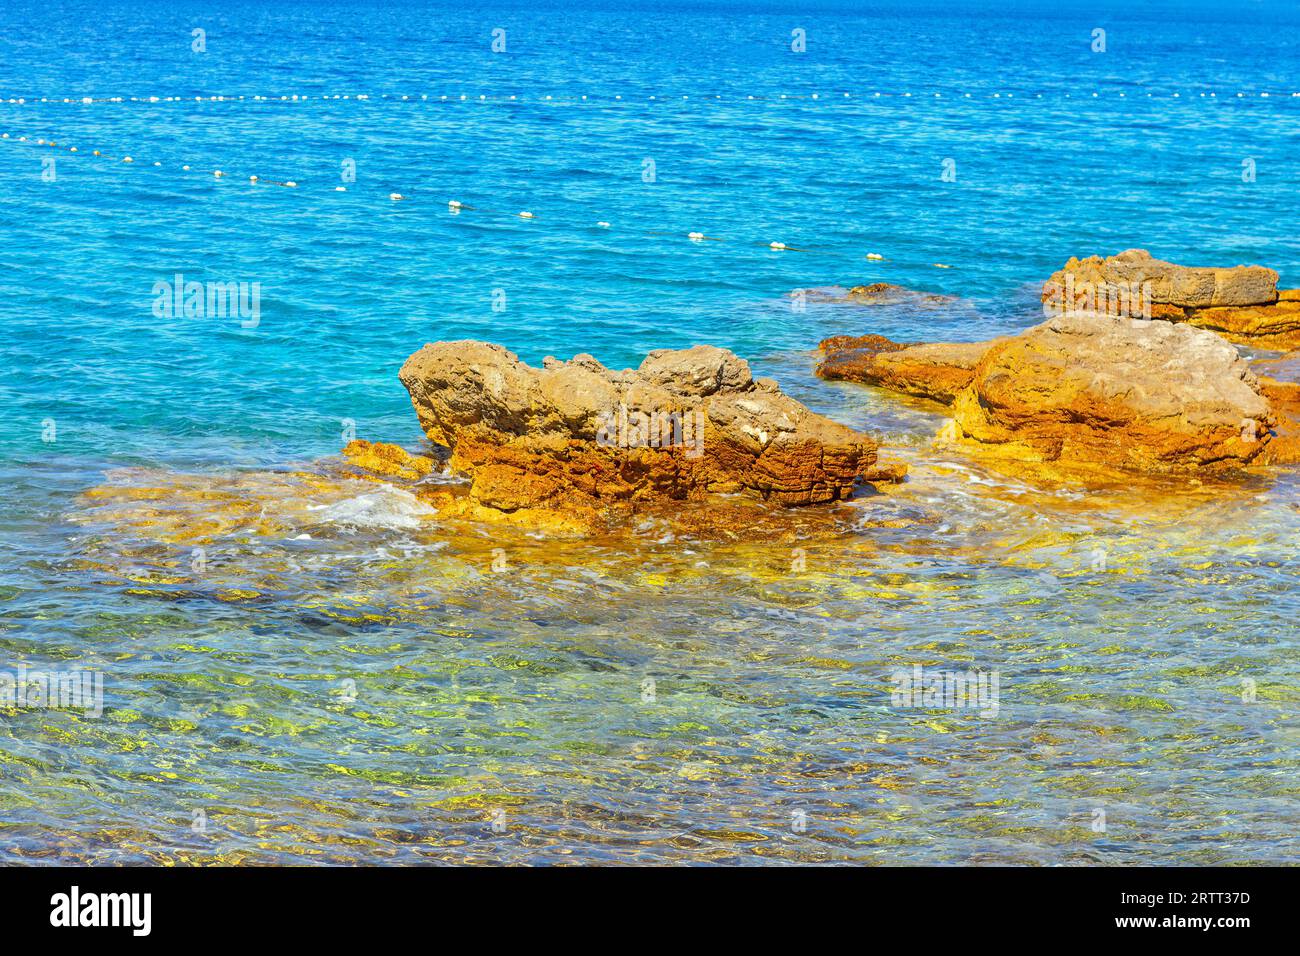 Rocky coast of the Mediterranean Sea in Costa Brava, Catalonia, Spain Stock Photo